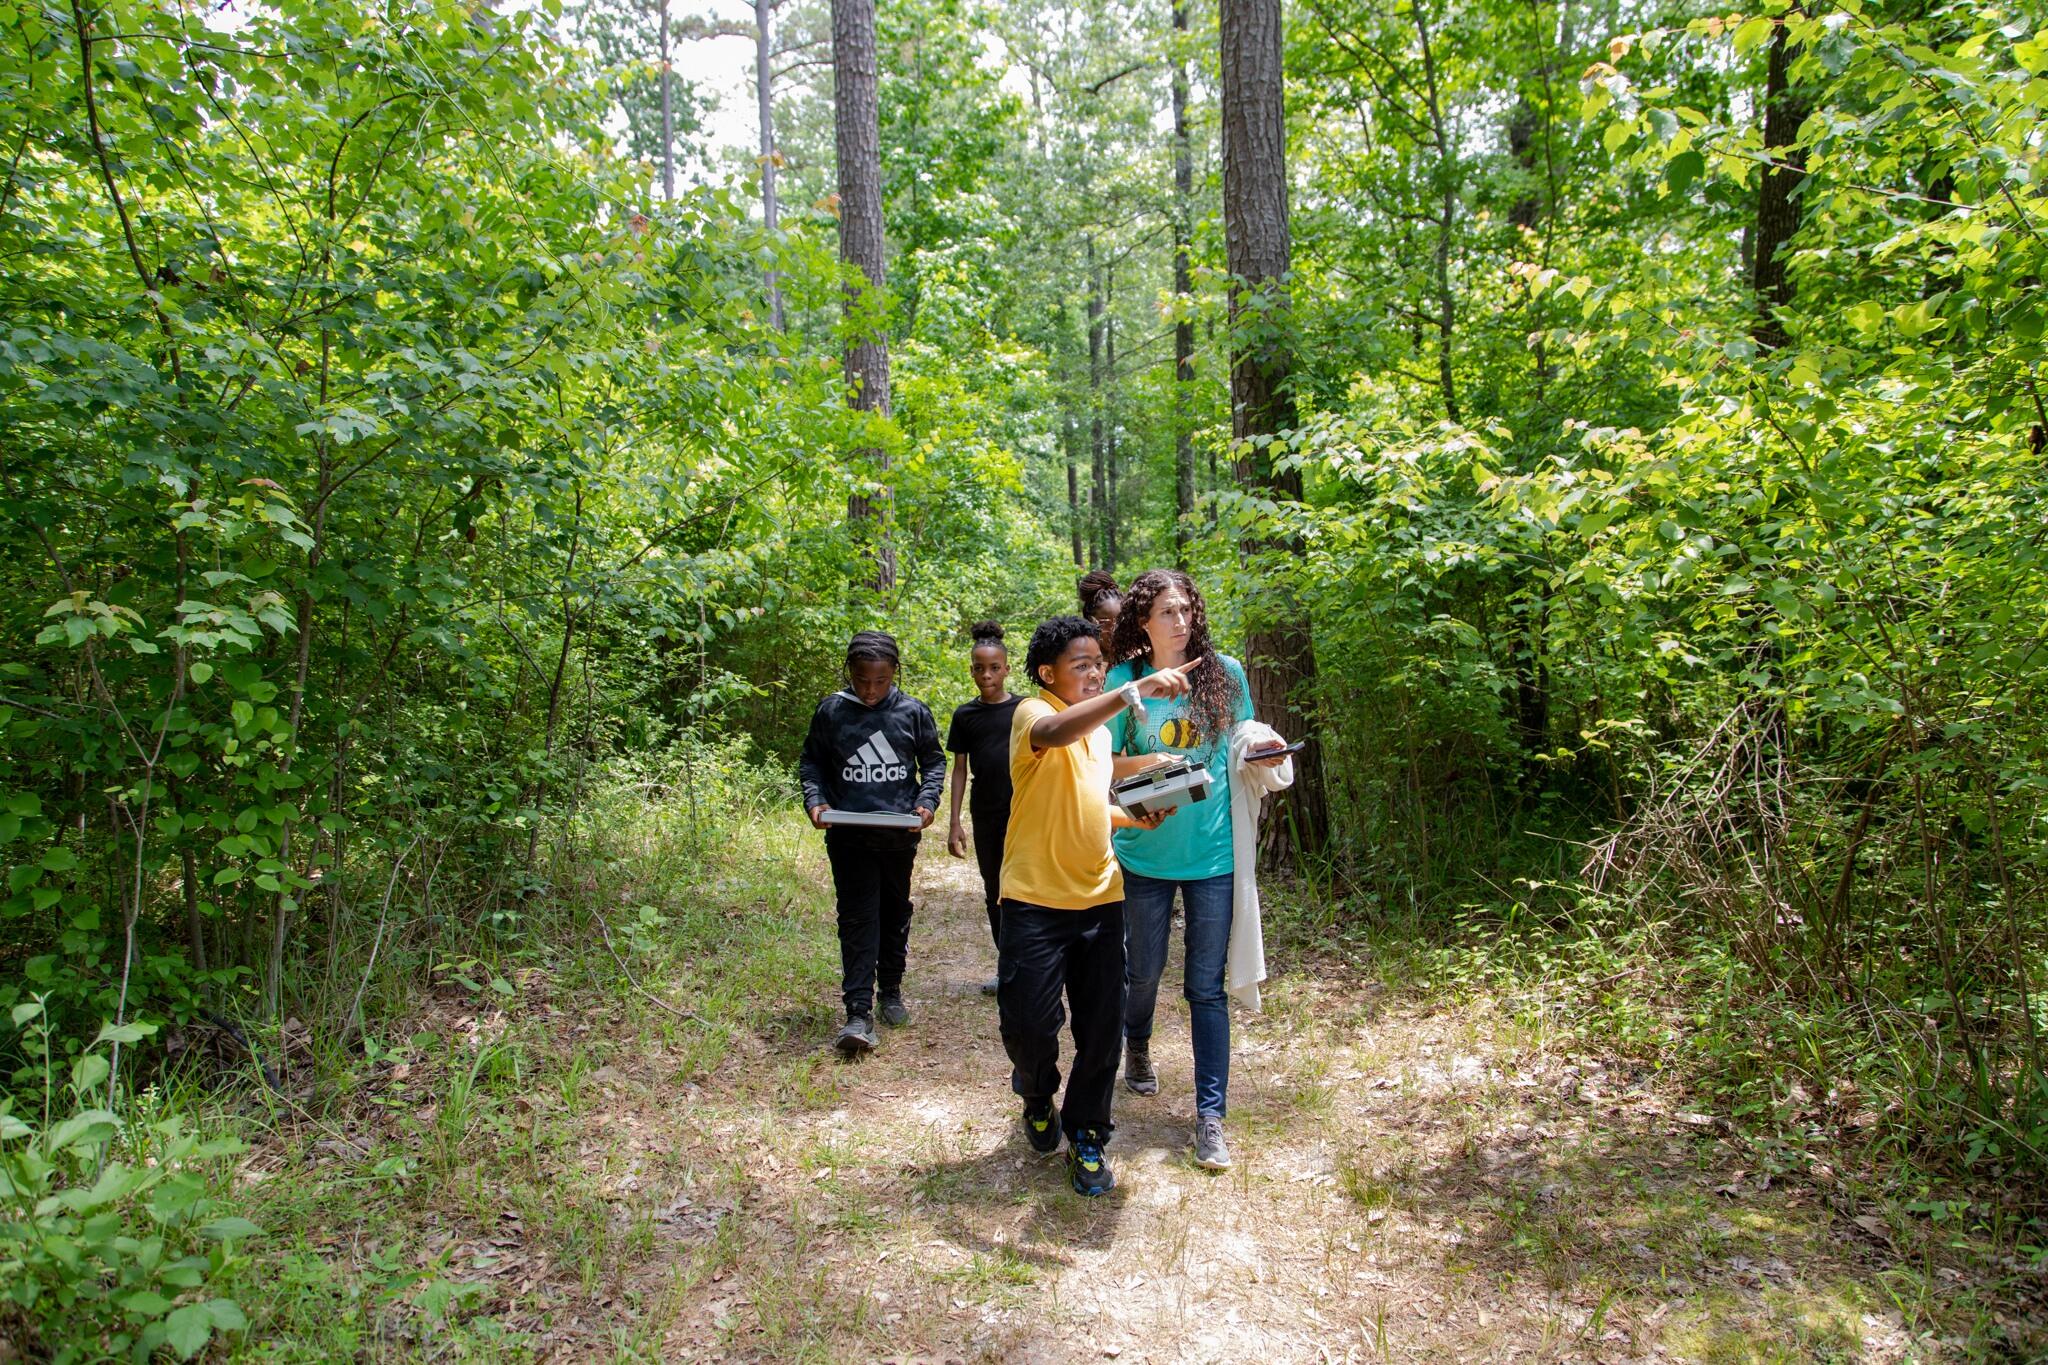 Overstreet students visit the Noxubee National Wildlife Refuge